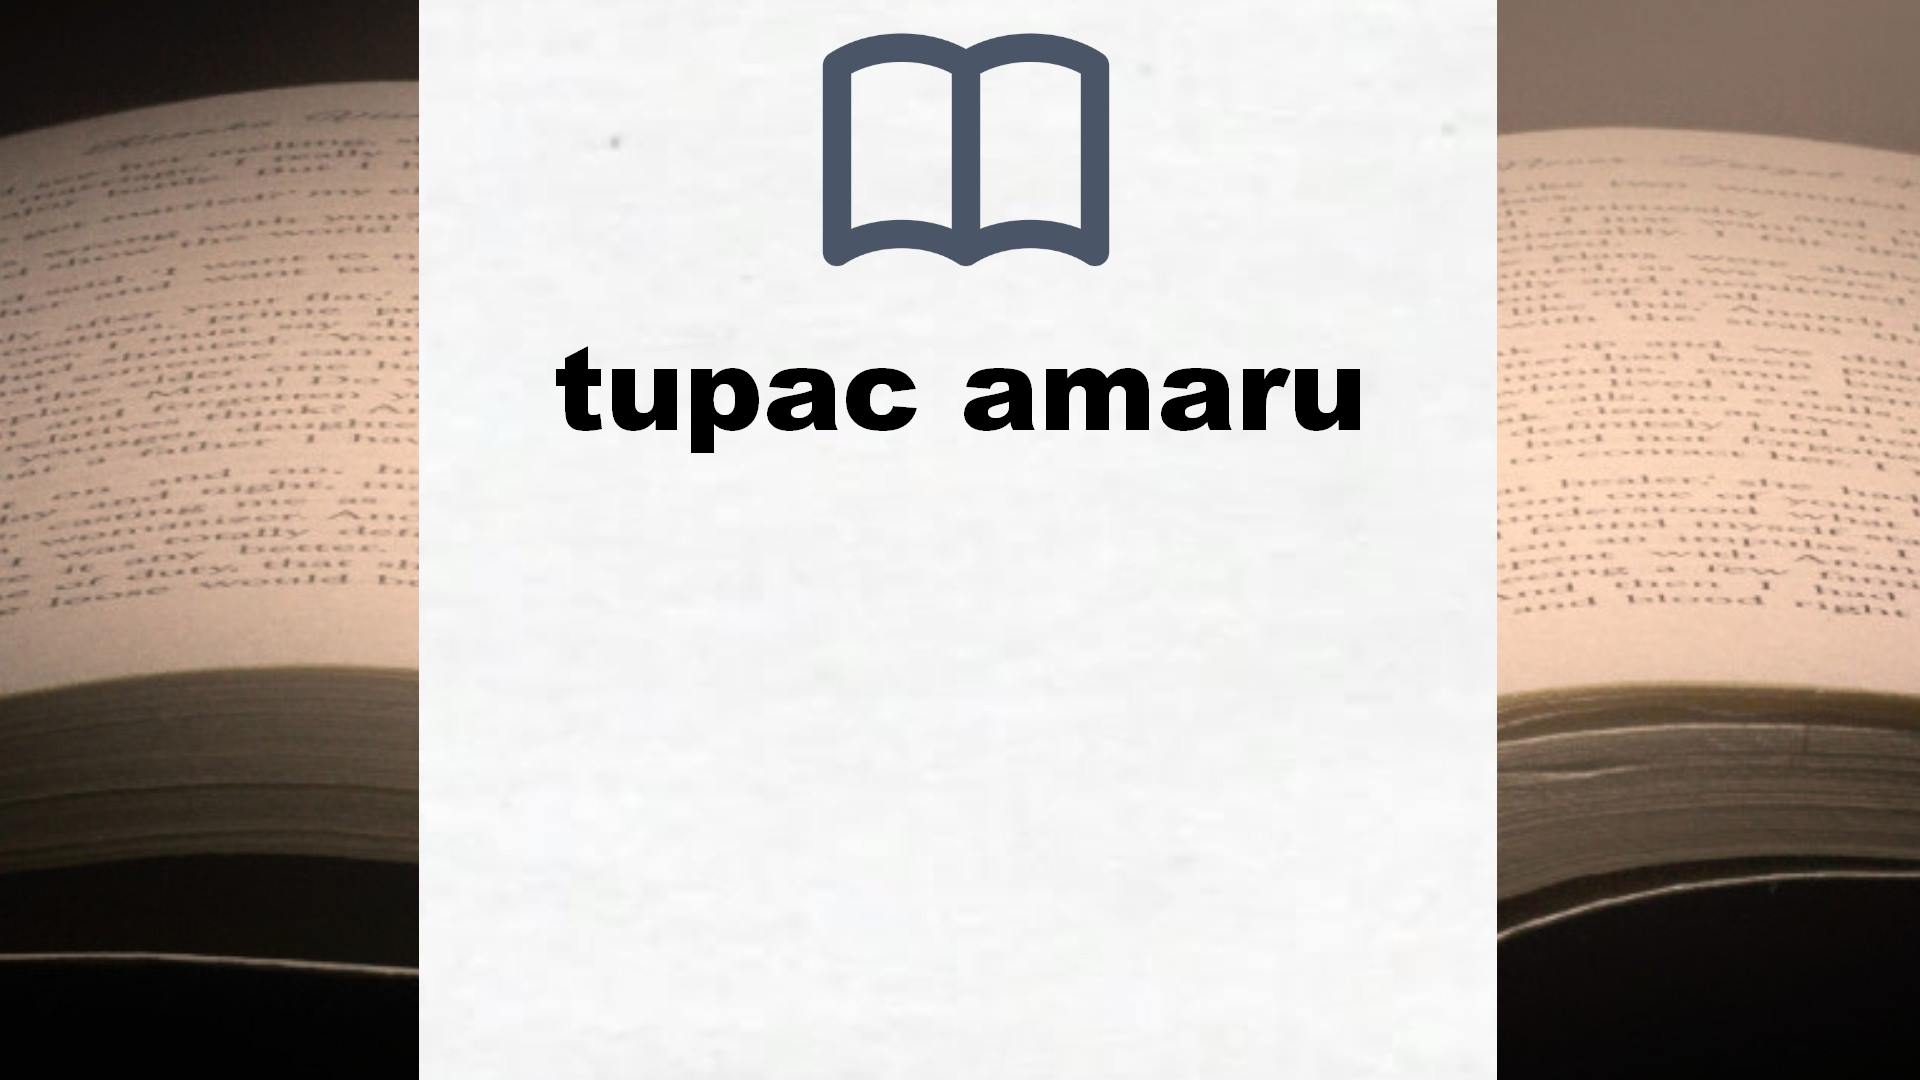 Libros sobre tupac amaru